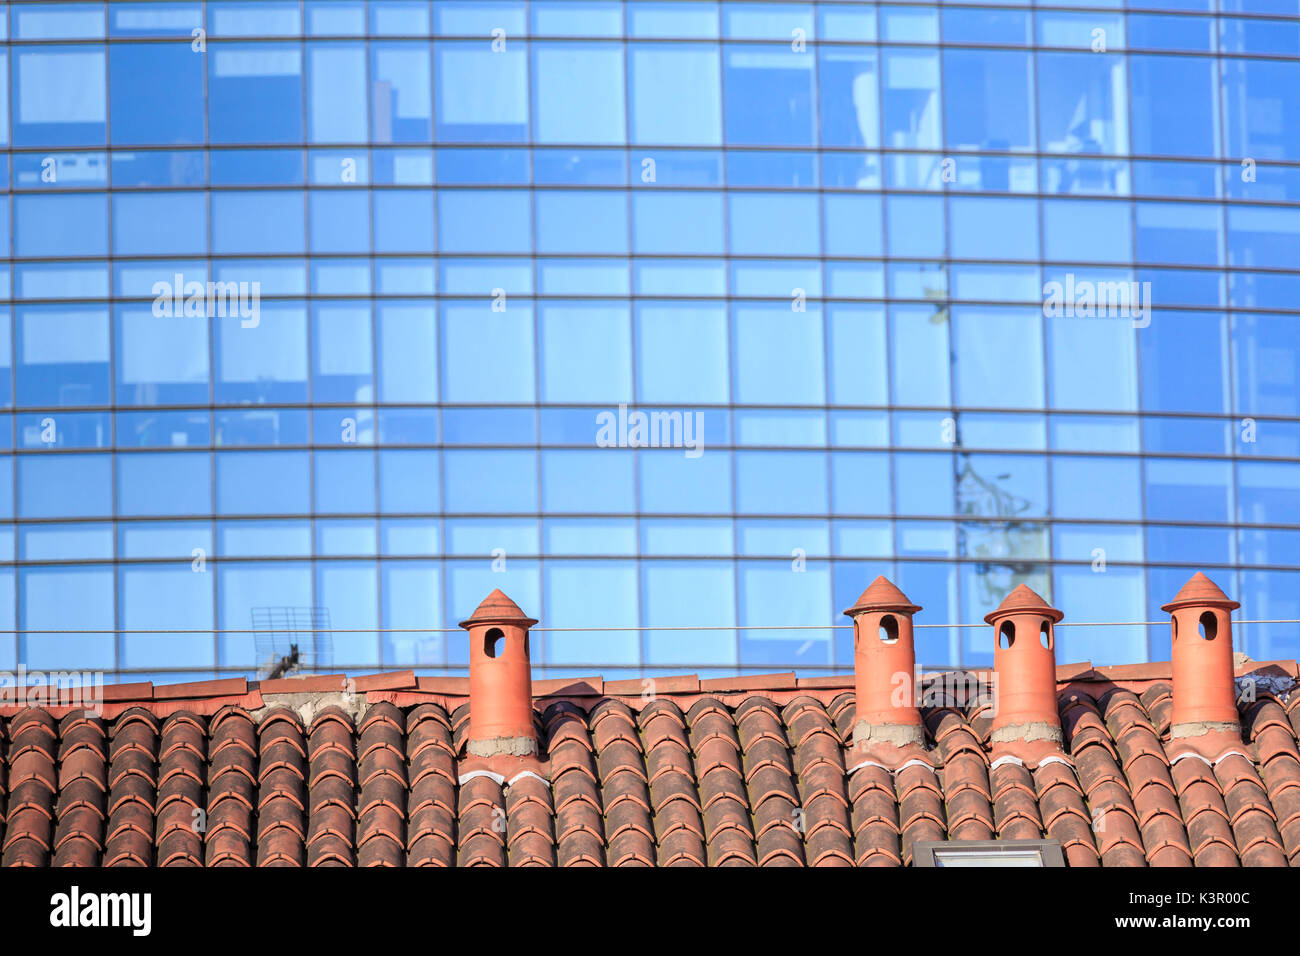 Der Kontrast zwischen alten typischen Häusern und neuen modernen Gebäuden und Wolkenkratzern Mailand Lombardei Italien Europa Stockfoto